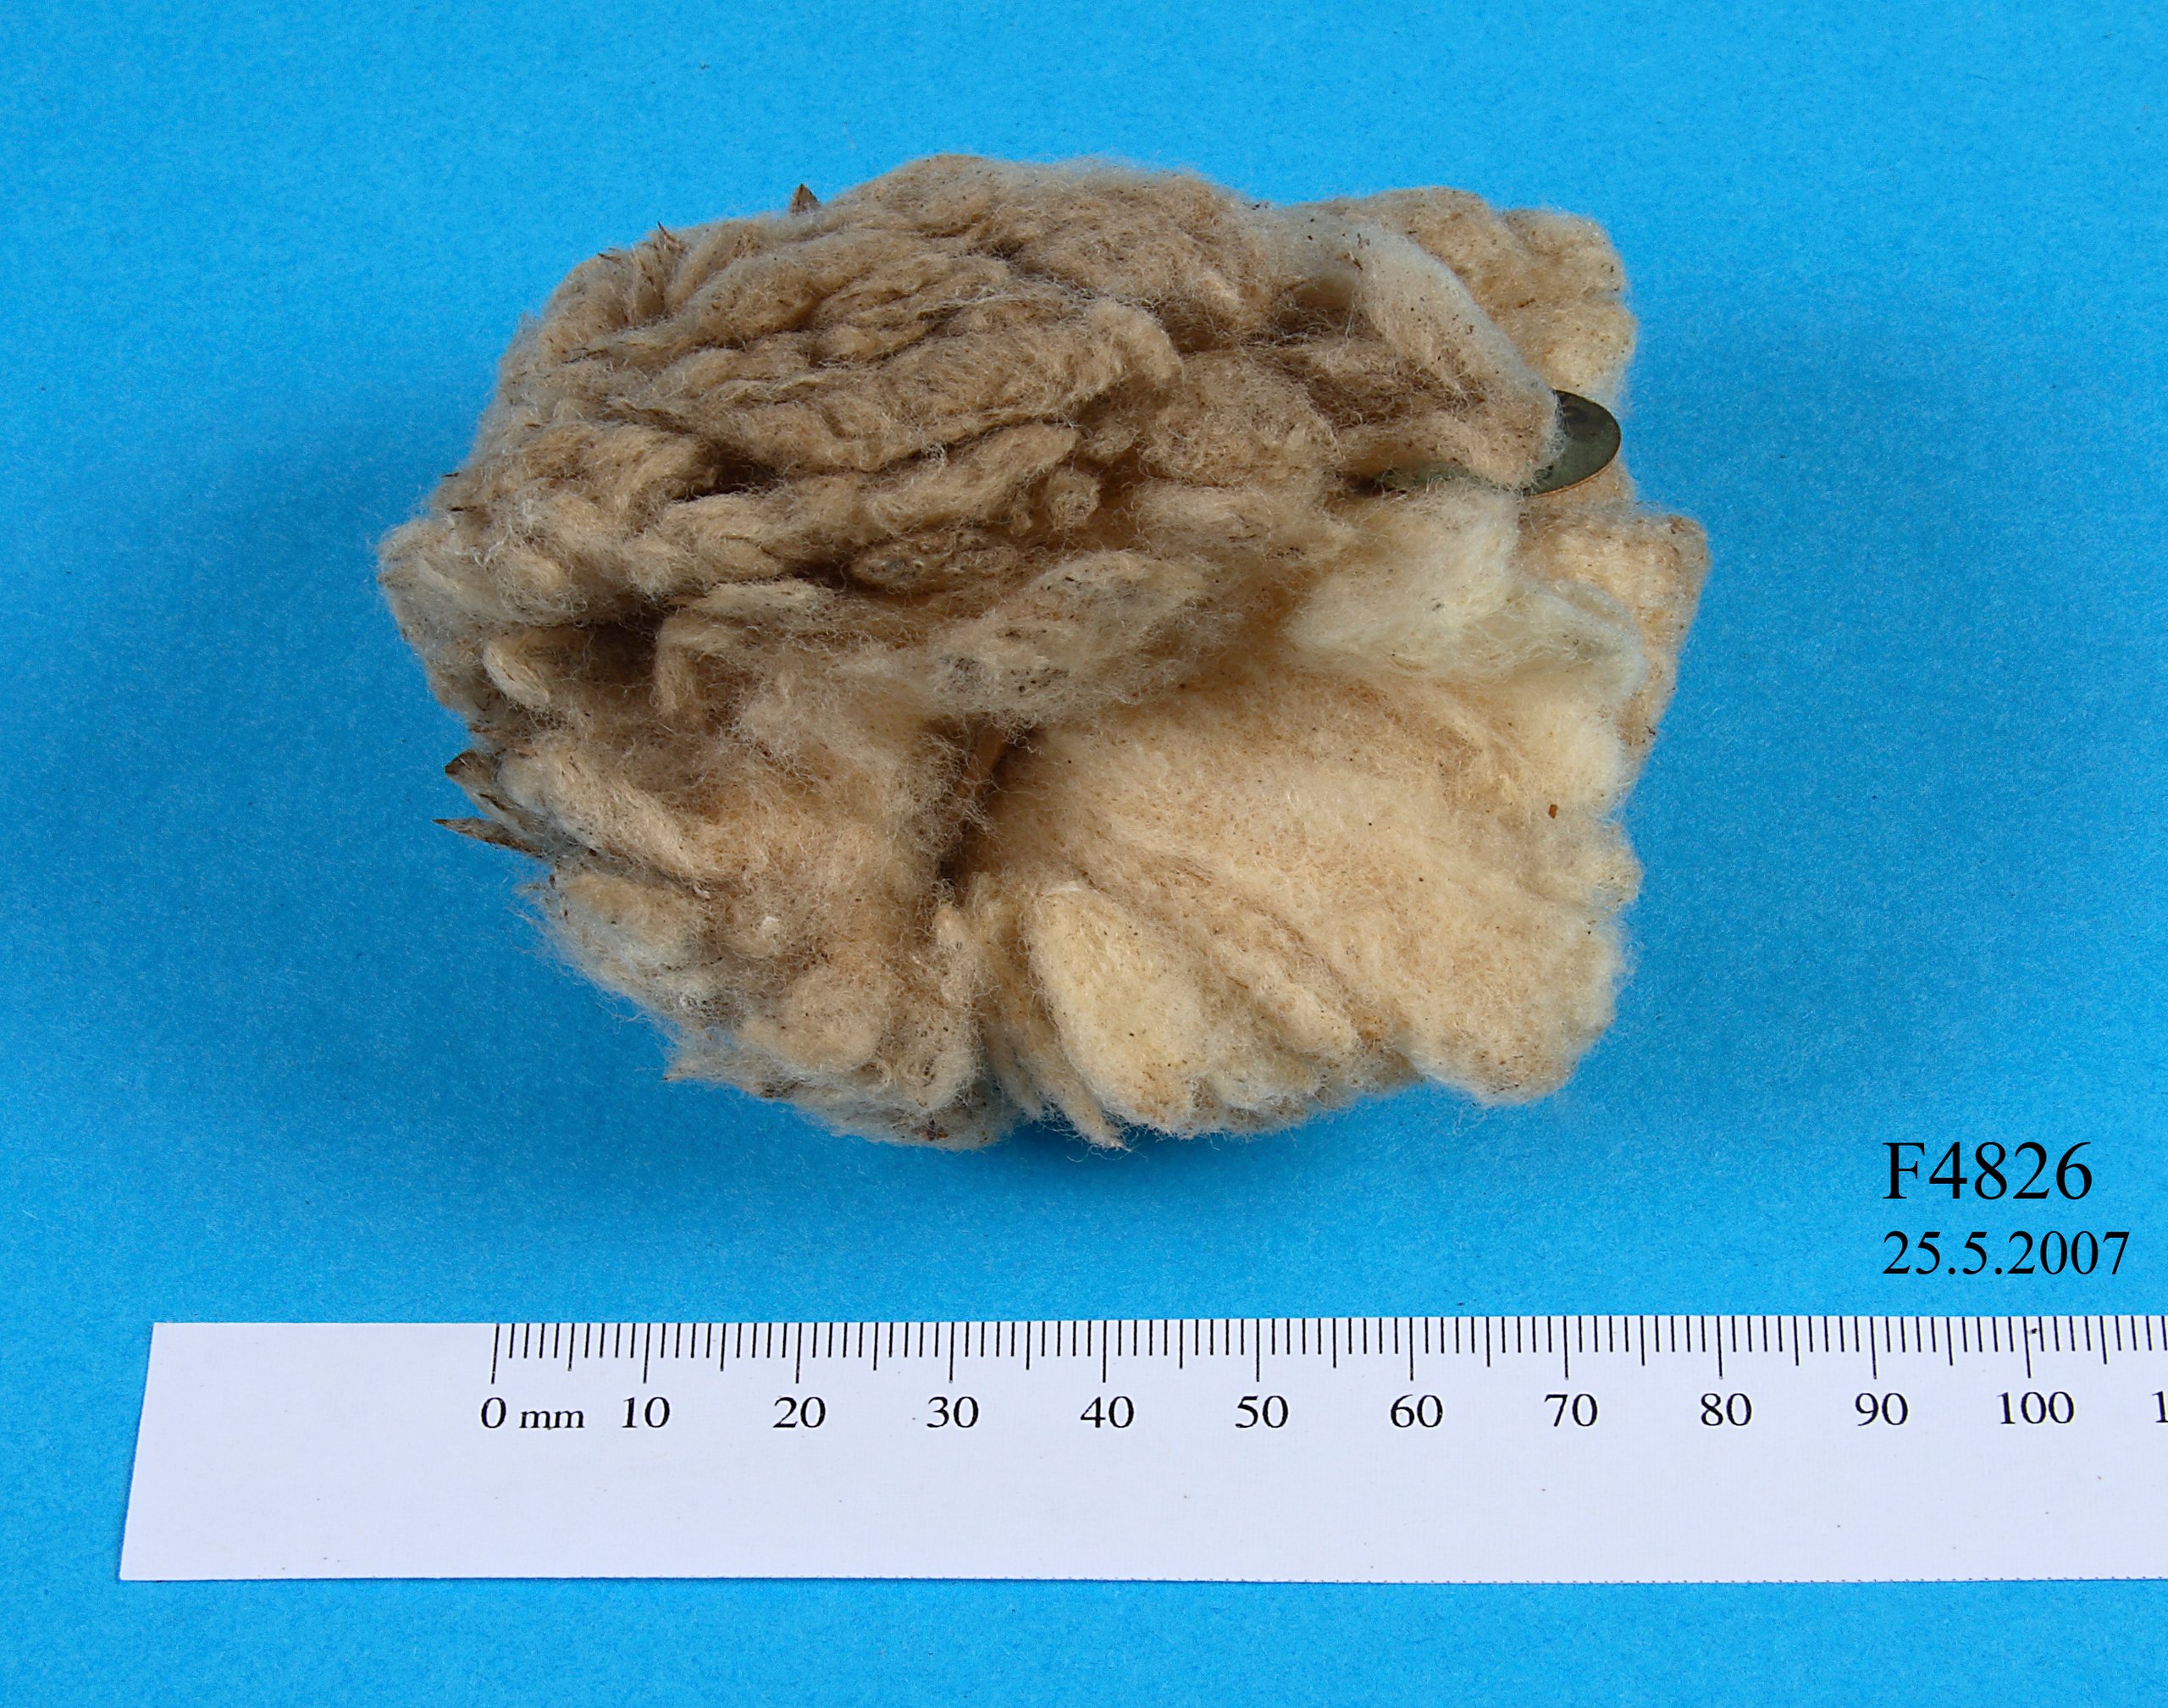 Wool specimen from a stud ewe.